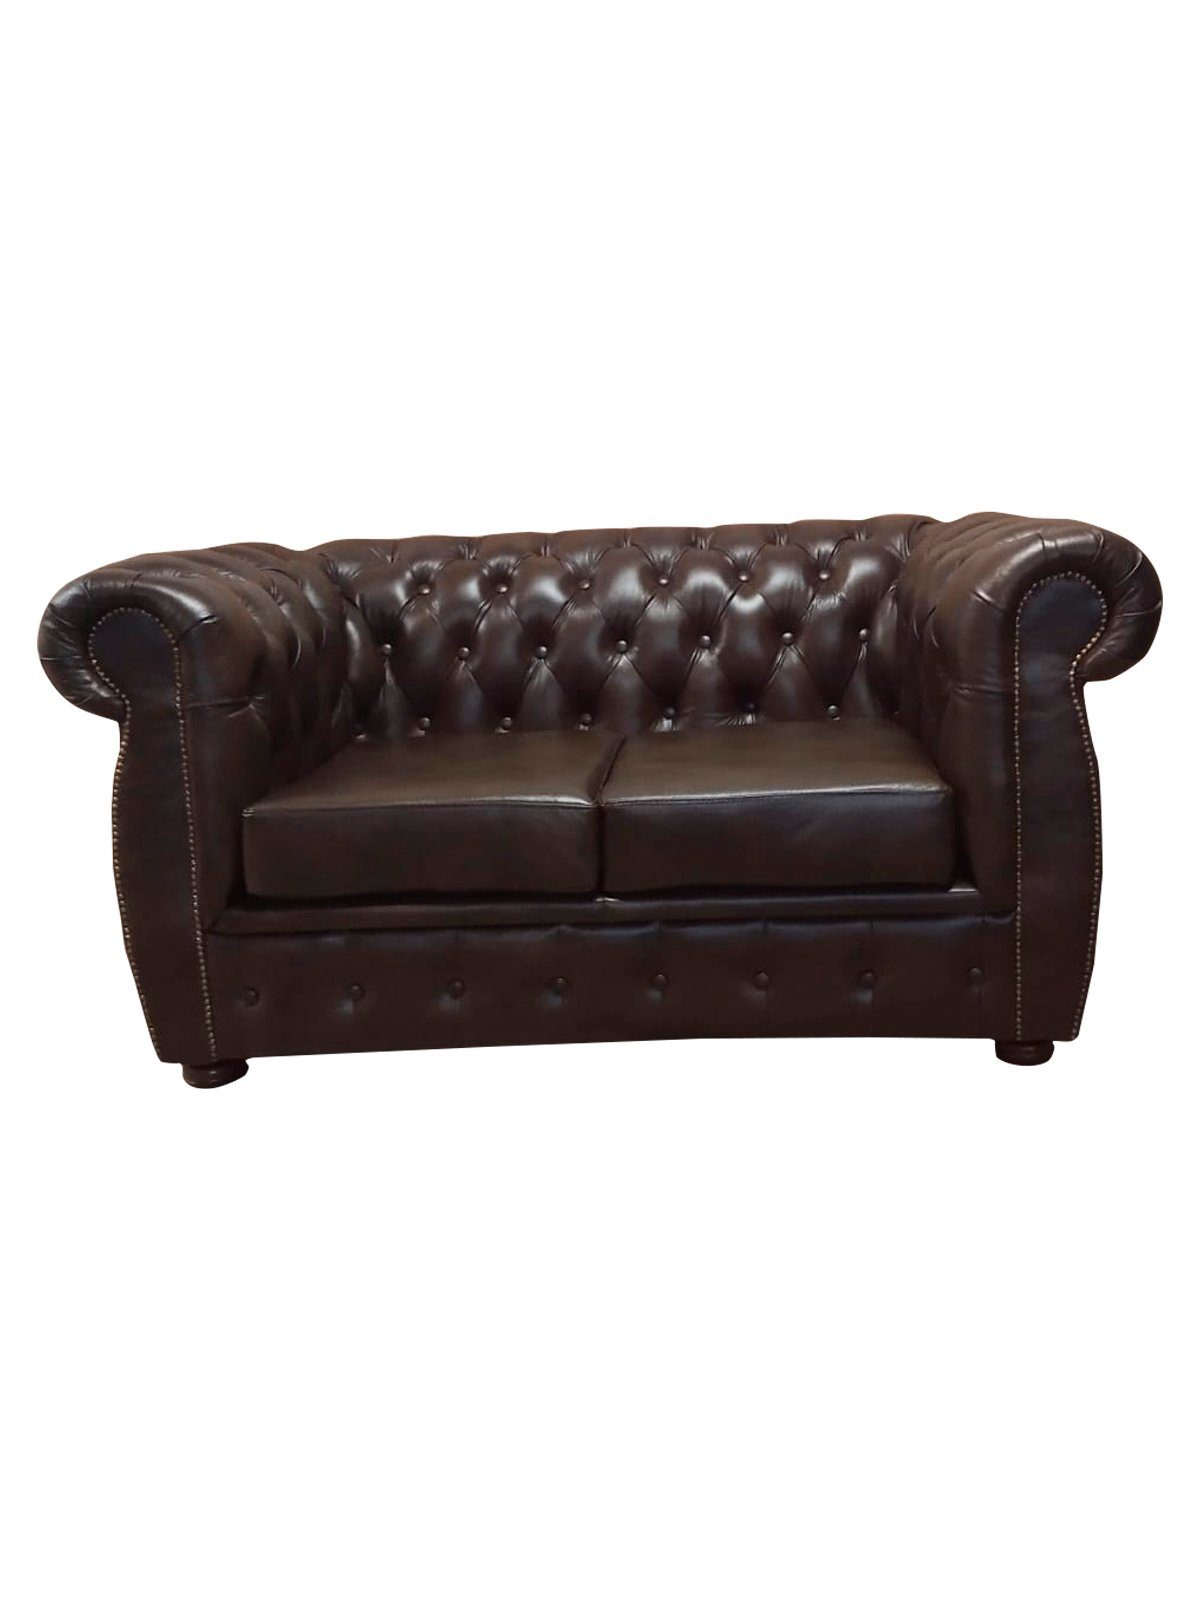 JVmoebel Sofa, Chesterfield Sofa 2 Sitz Luxus Couch Zweisitzer Sofas Braun Möbel